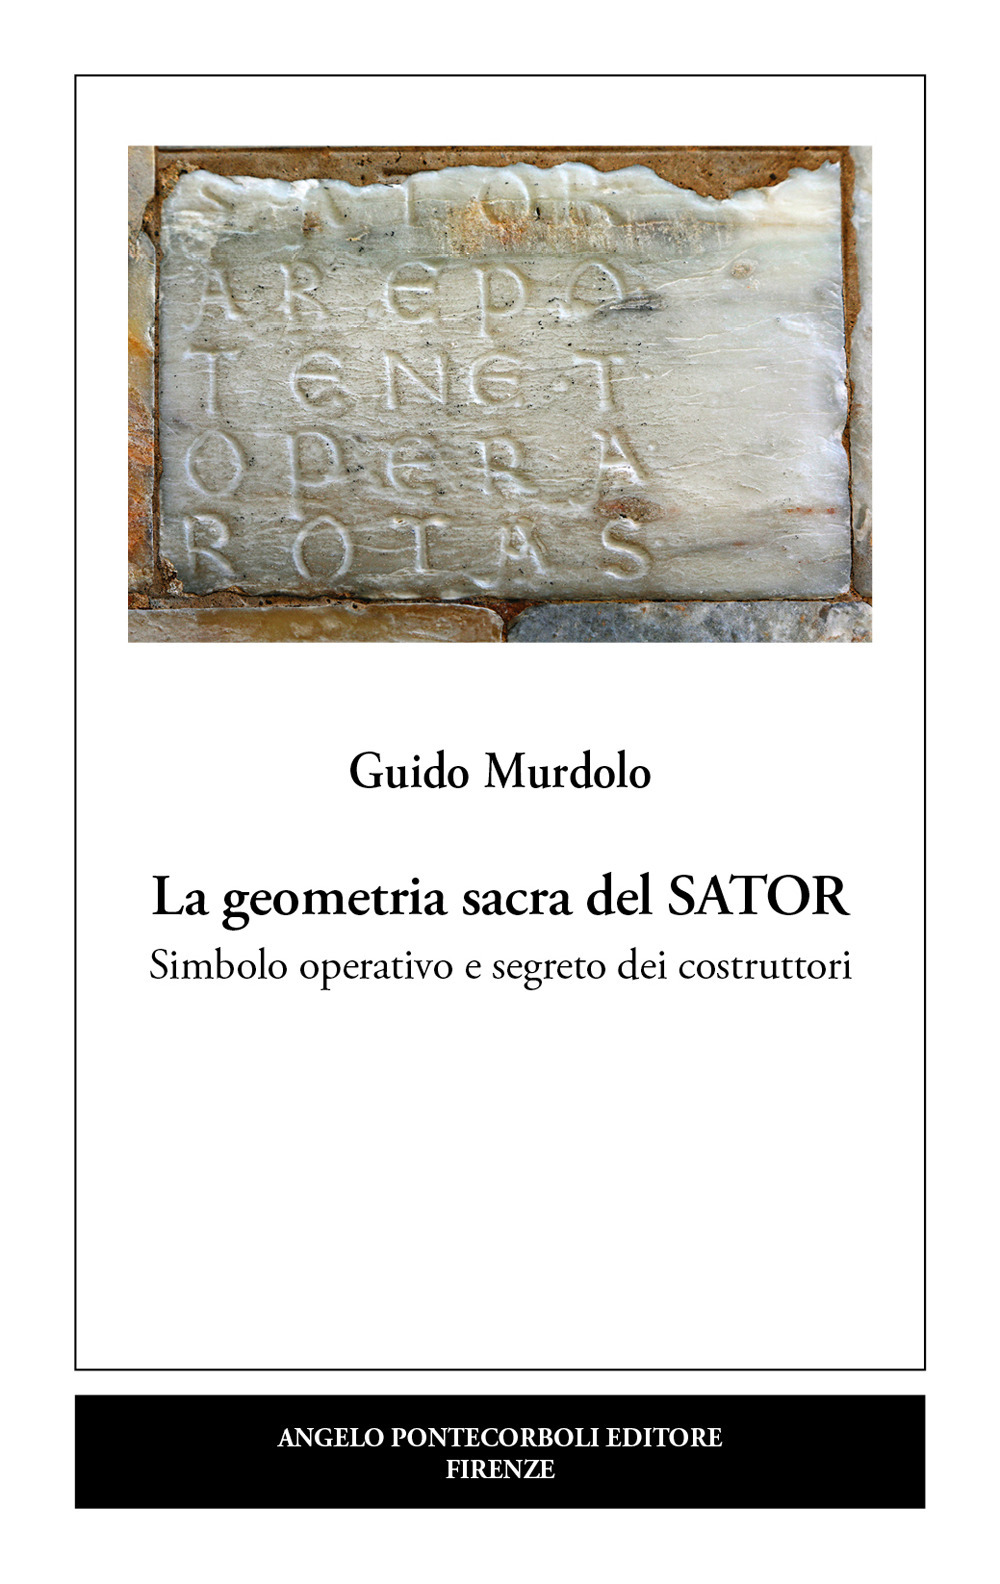 La geometria sacra del Sator. Simbolo operativo e segreto dei costruttori